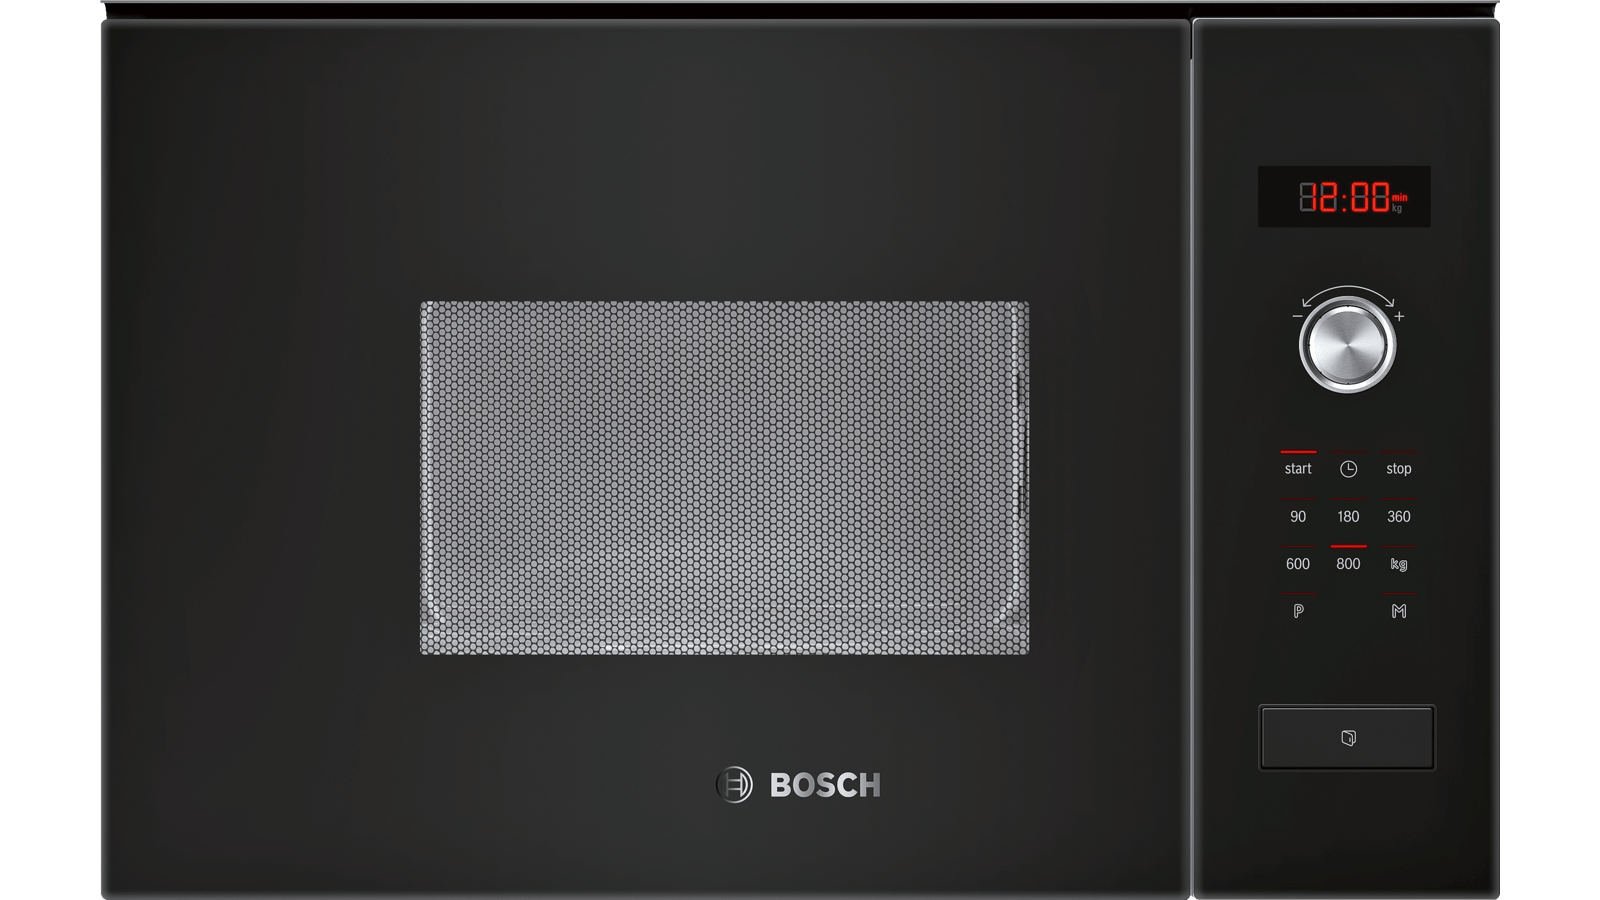 Встроенная микроволновая печь bosch черная. Микроволновая печь встраиваемая Bosch bfl623mc3. Микроволновая печь встраиваемая Bosch bfl554ms0. Микроволновая печь Siemens hf15m541. Микроволновая печь Bosch bel524mb0.